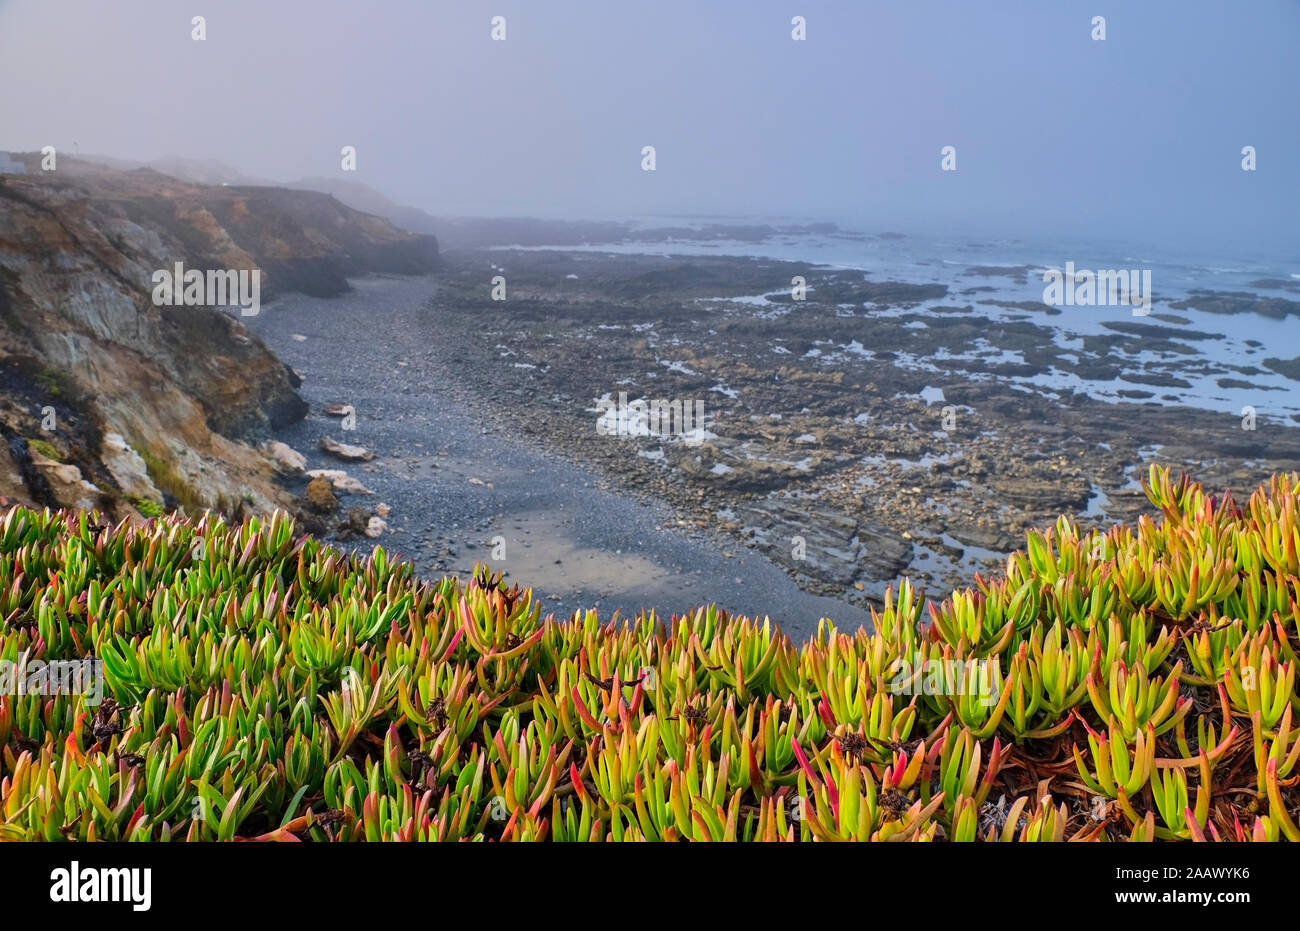 Portugal, Alentejo, Vila Nova de Milfontes, plantas que crecen en frente de la playa rocosa costera Foto de stock